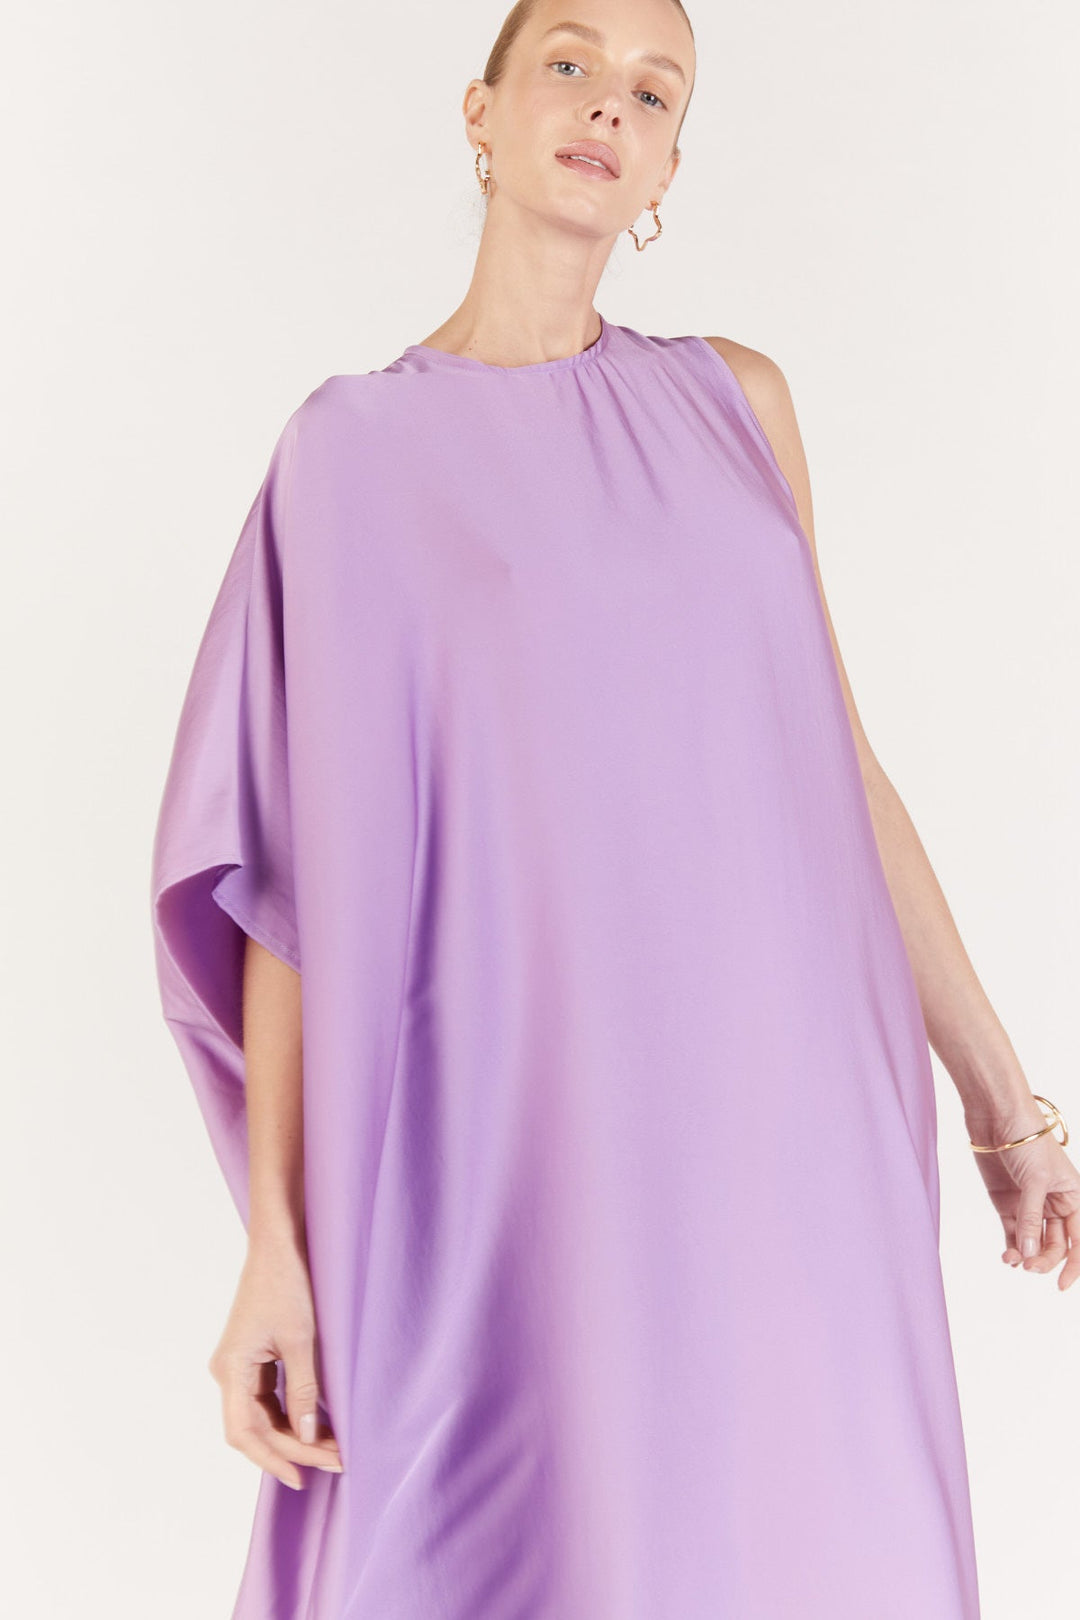 שמלת מקסי כרמן בצבע סגול לילך - Dana Sidi